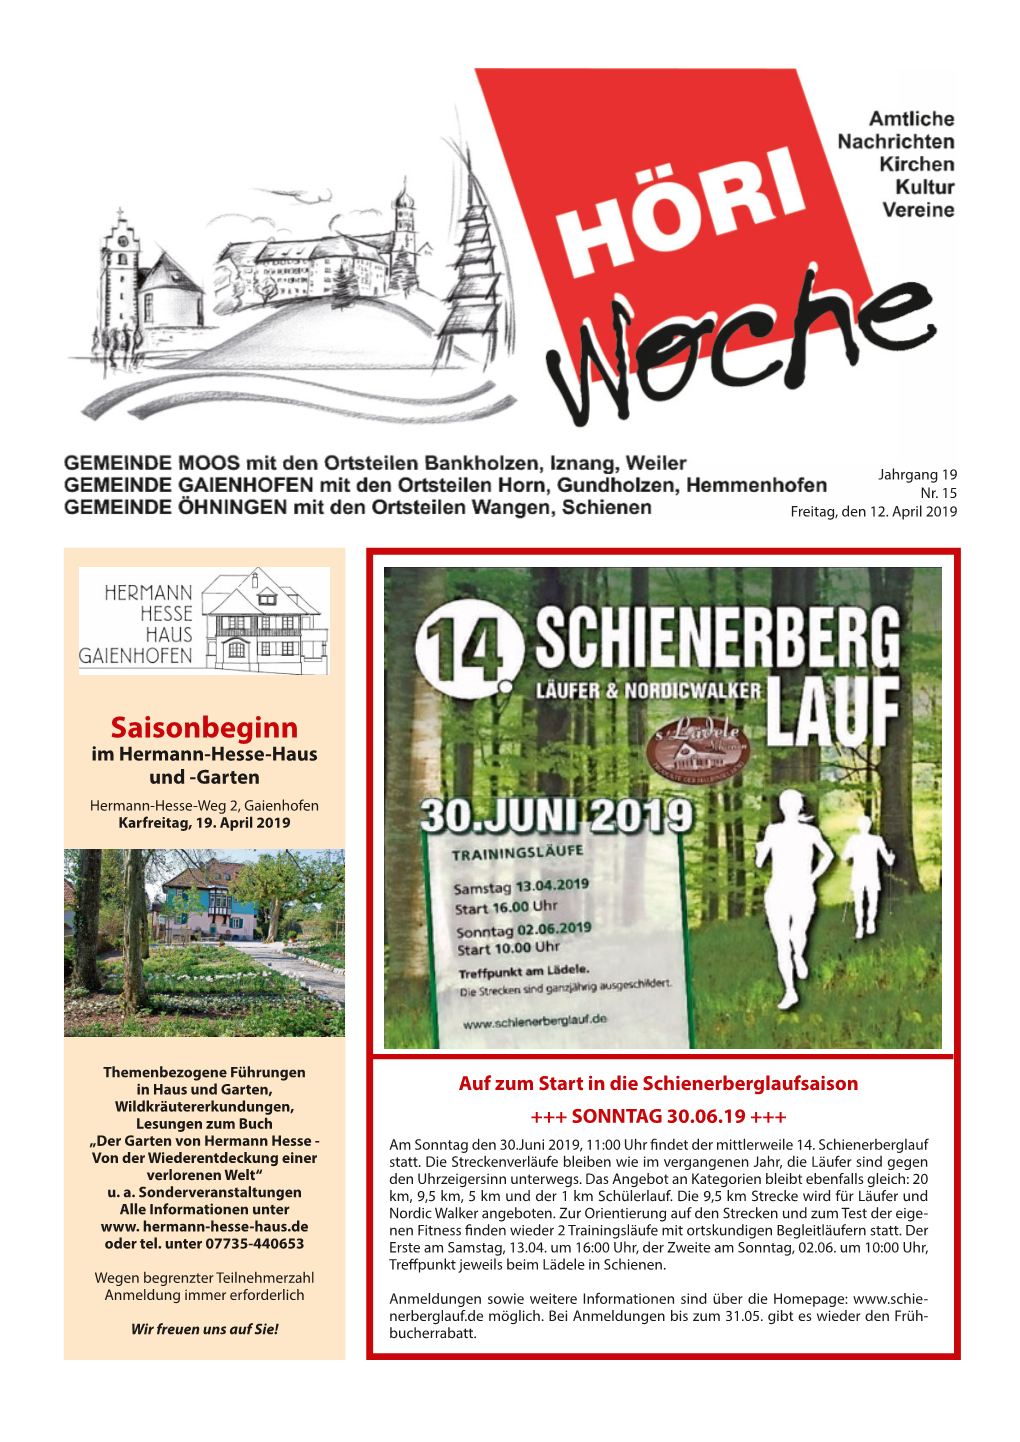 Saisonbeginn Im Hermann-Hesse-Haus Und -Garten Hermann-Hesse-Weg 2, Gaienhofen Karfreitag, 19